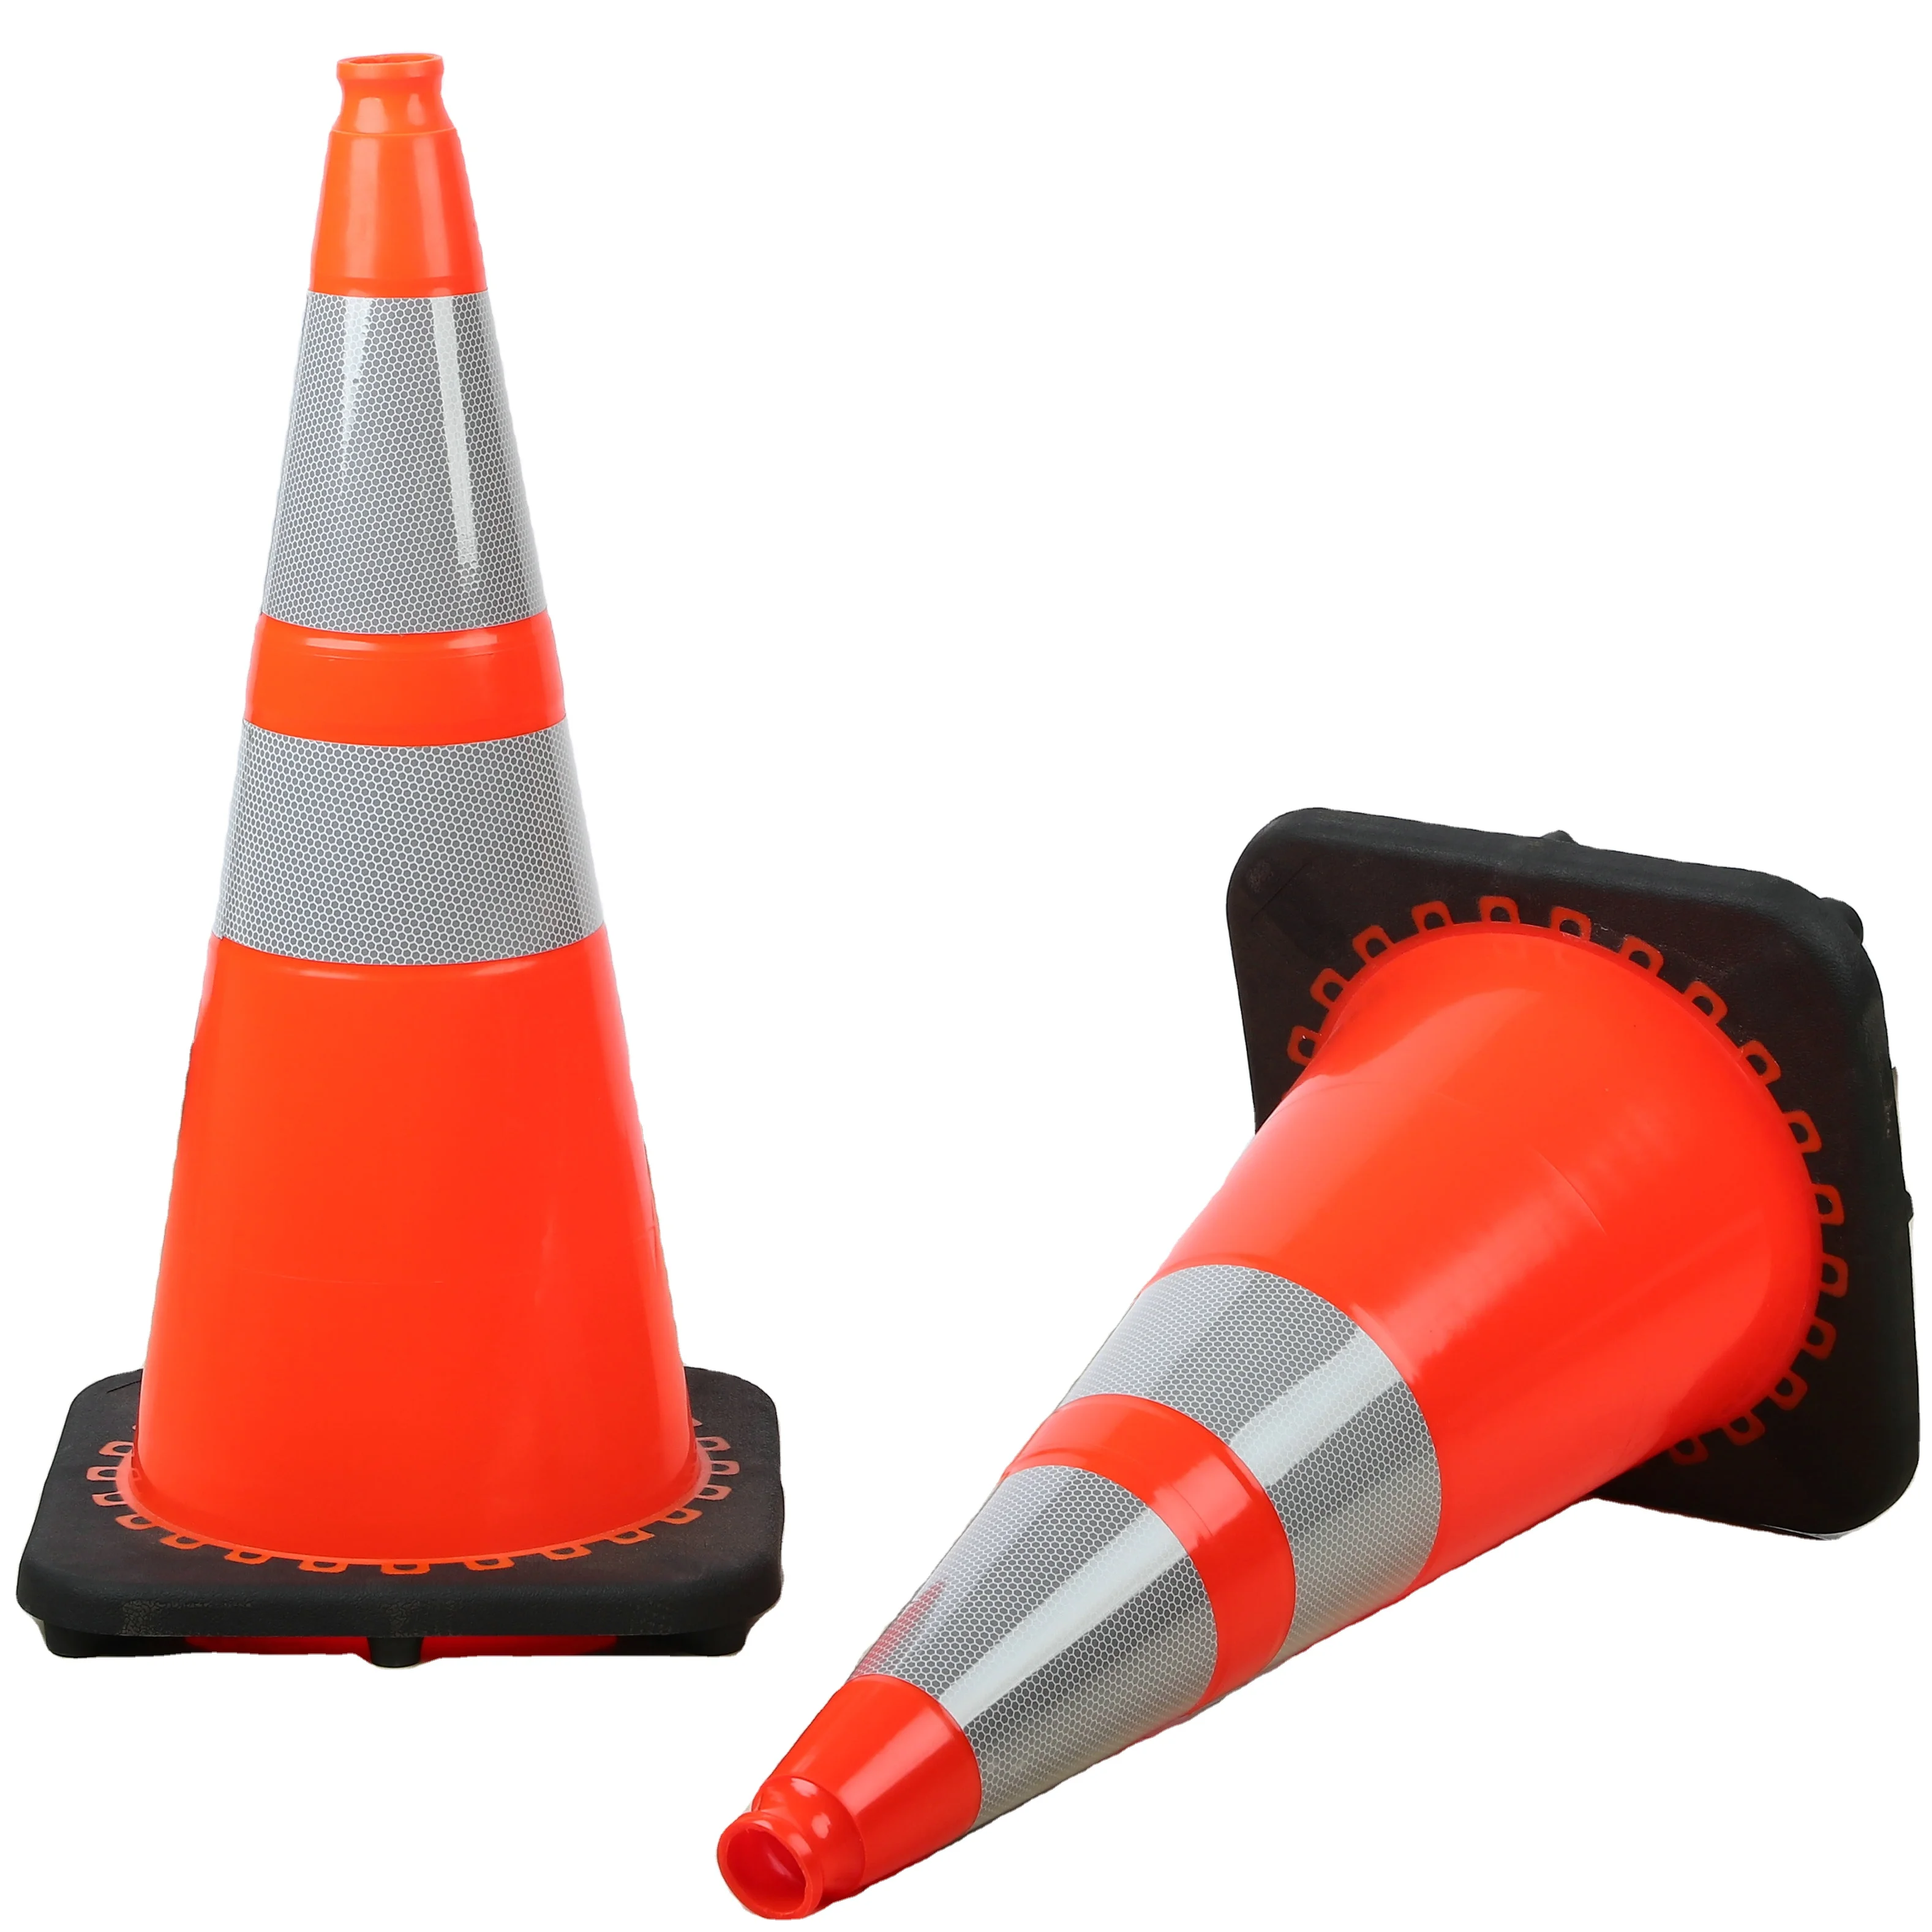 Orange Traffic Cones 18 Inch Pack, Collapsible Orange Safety Cones, Per - 5